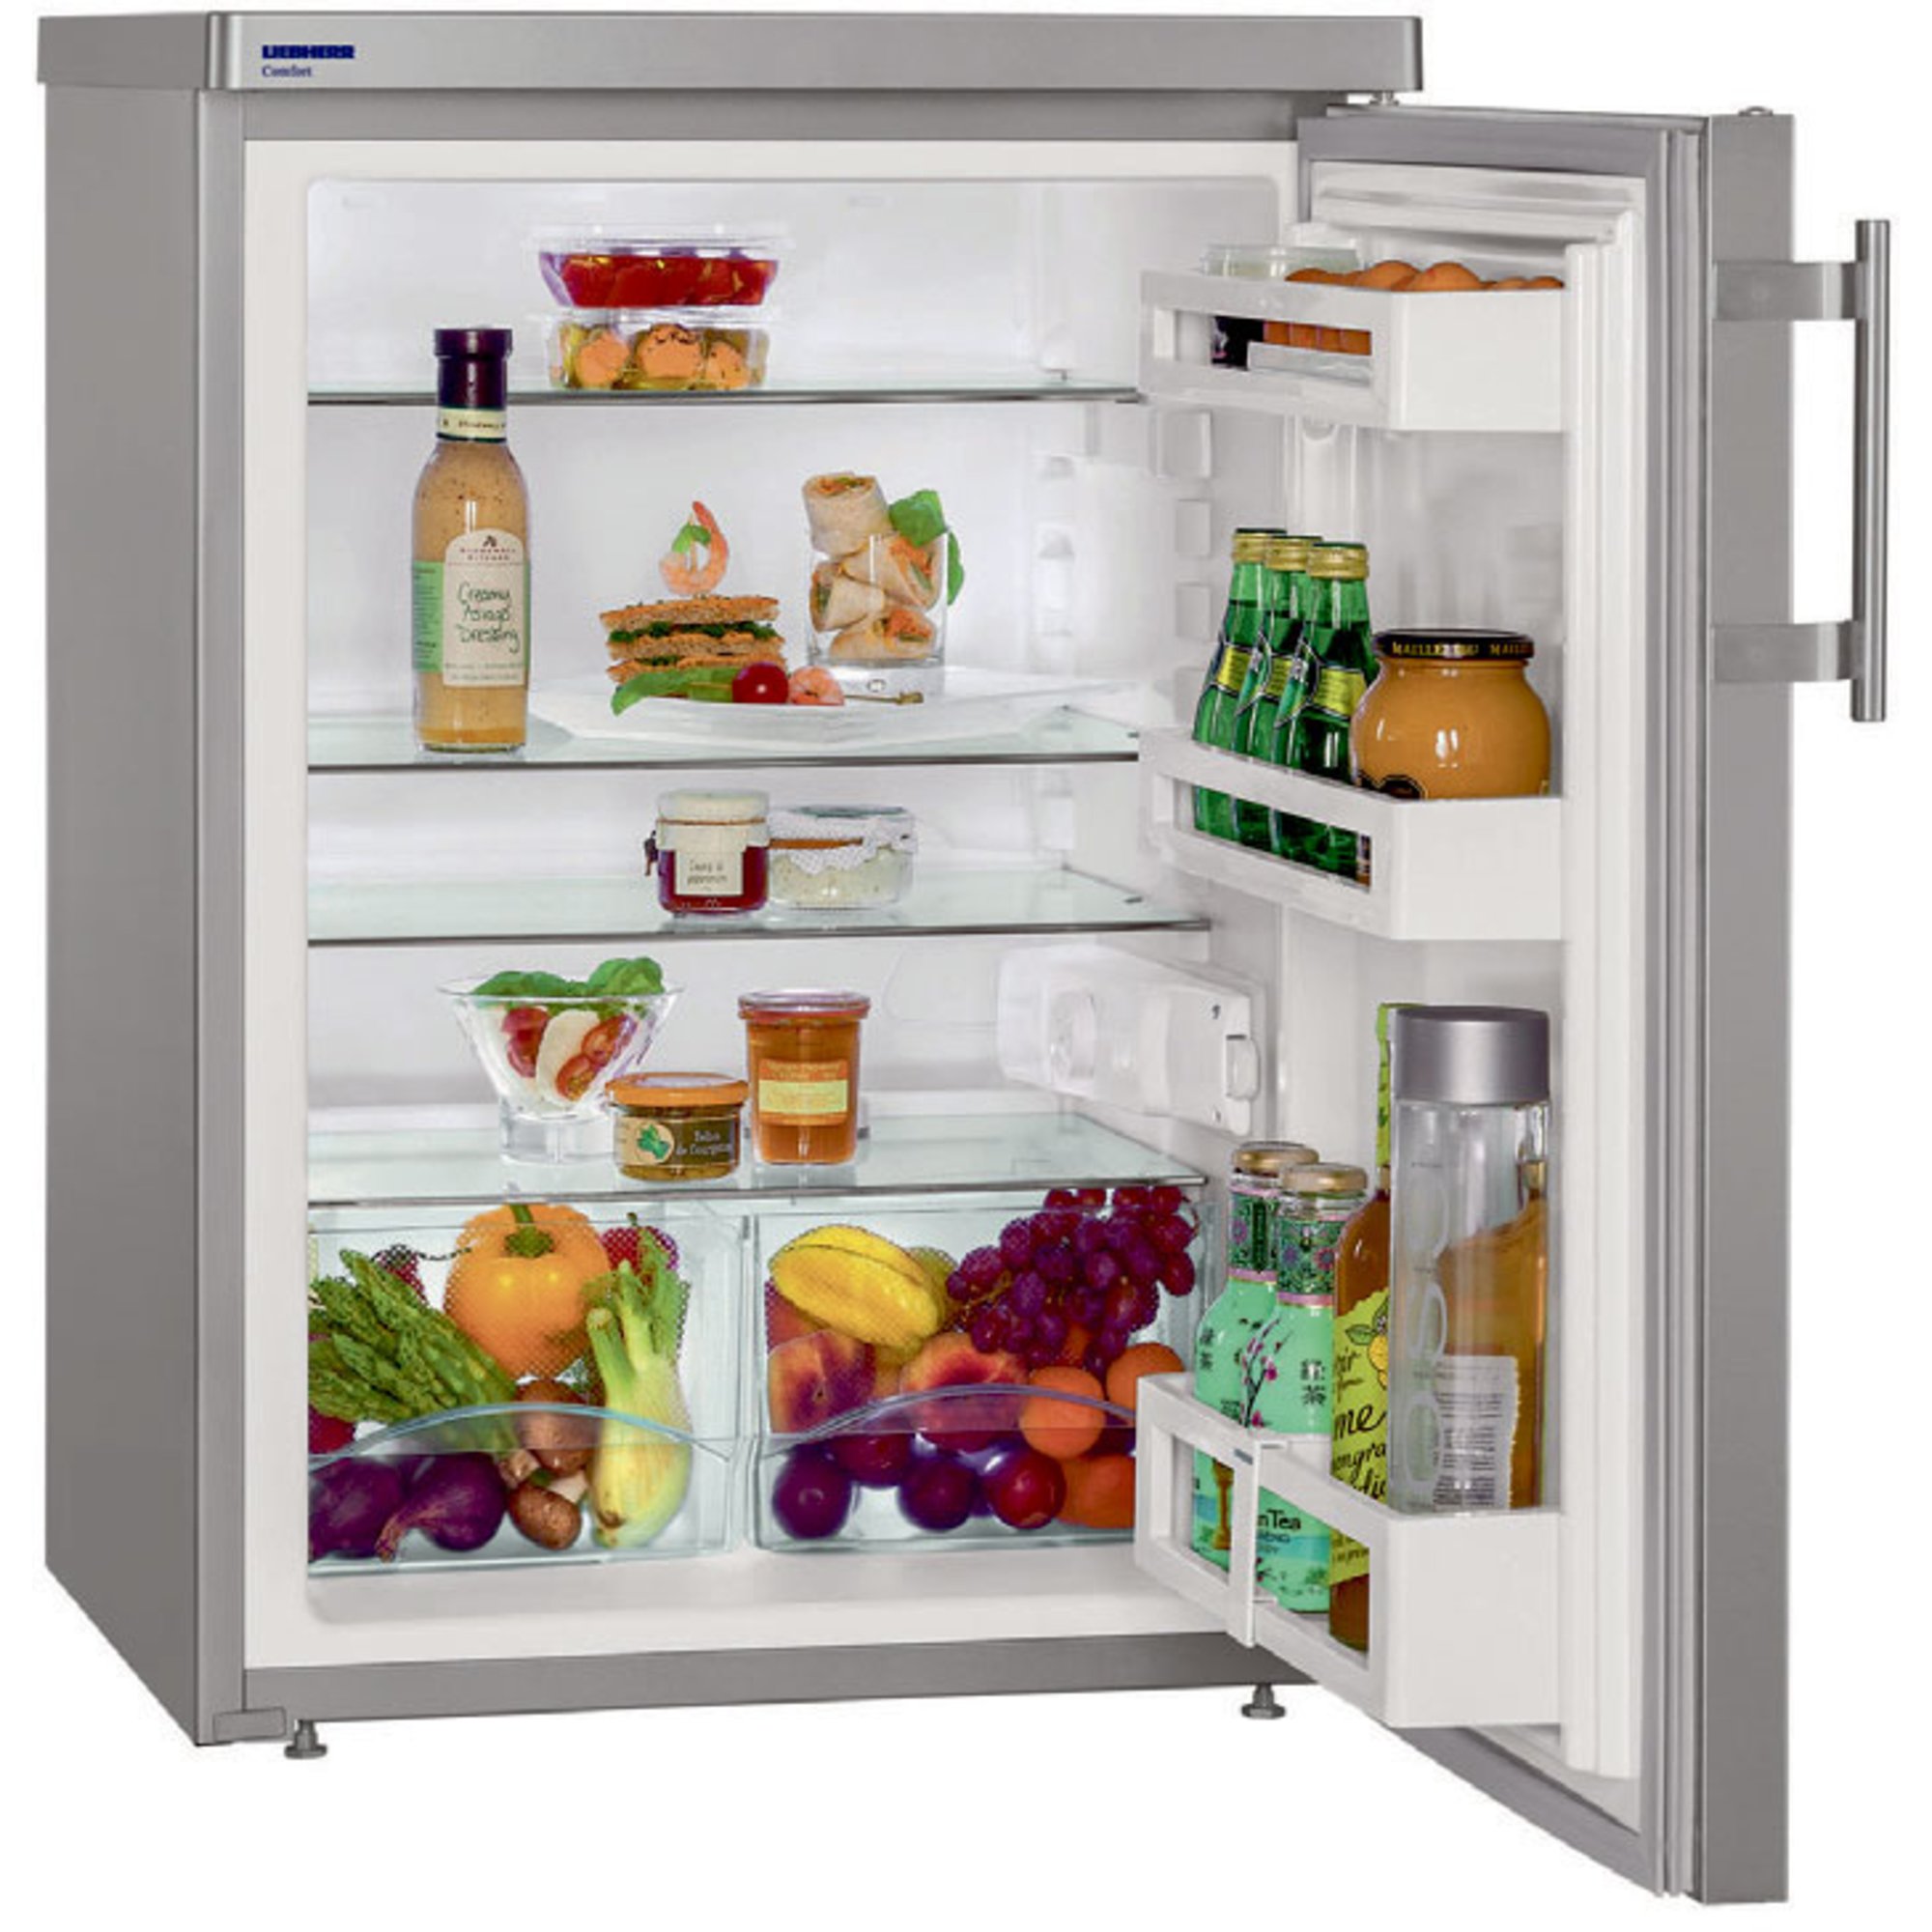 #1 på vores liste over køleskabe er Køleskab